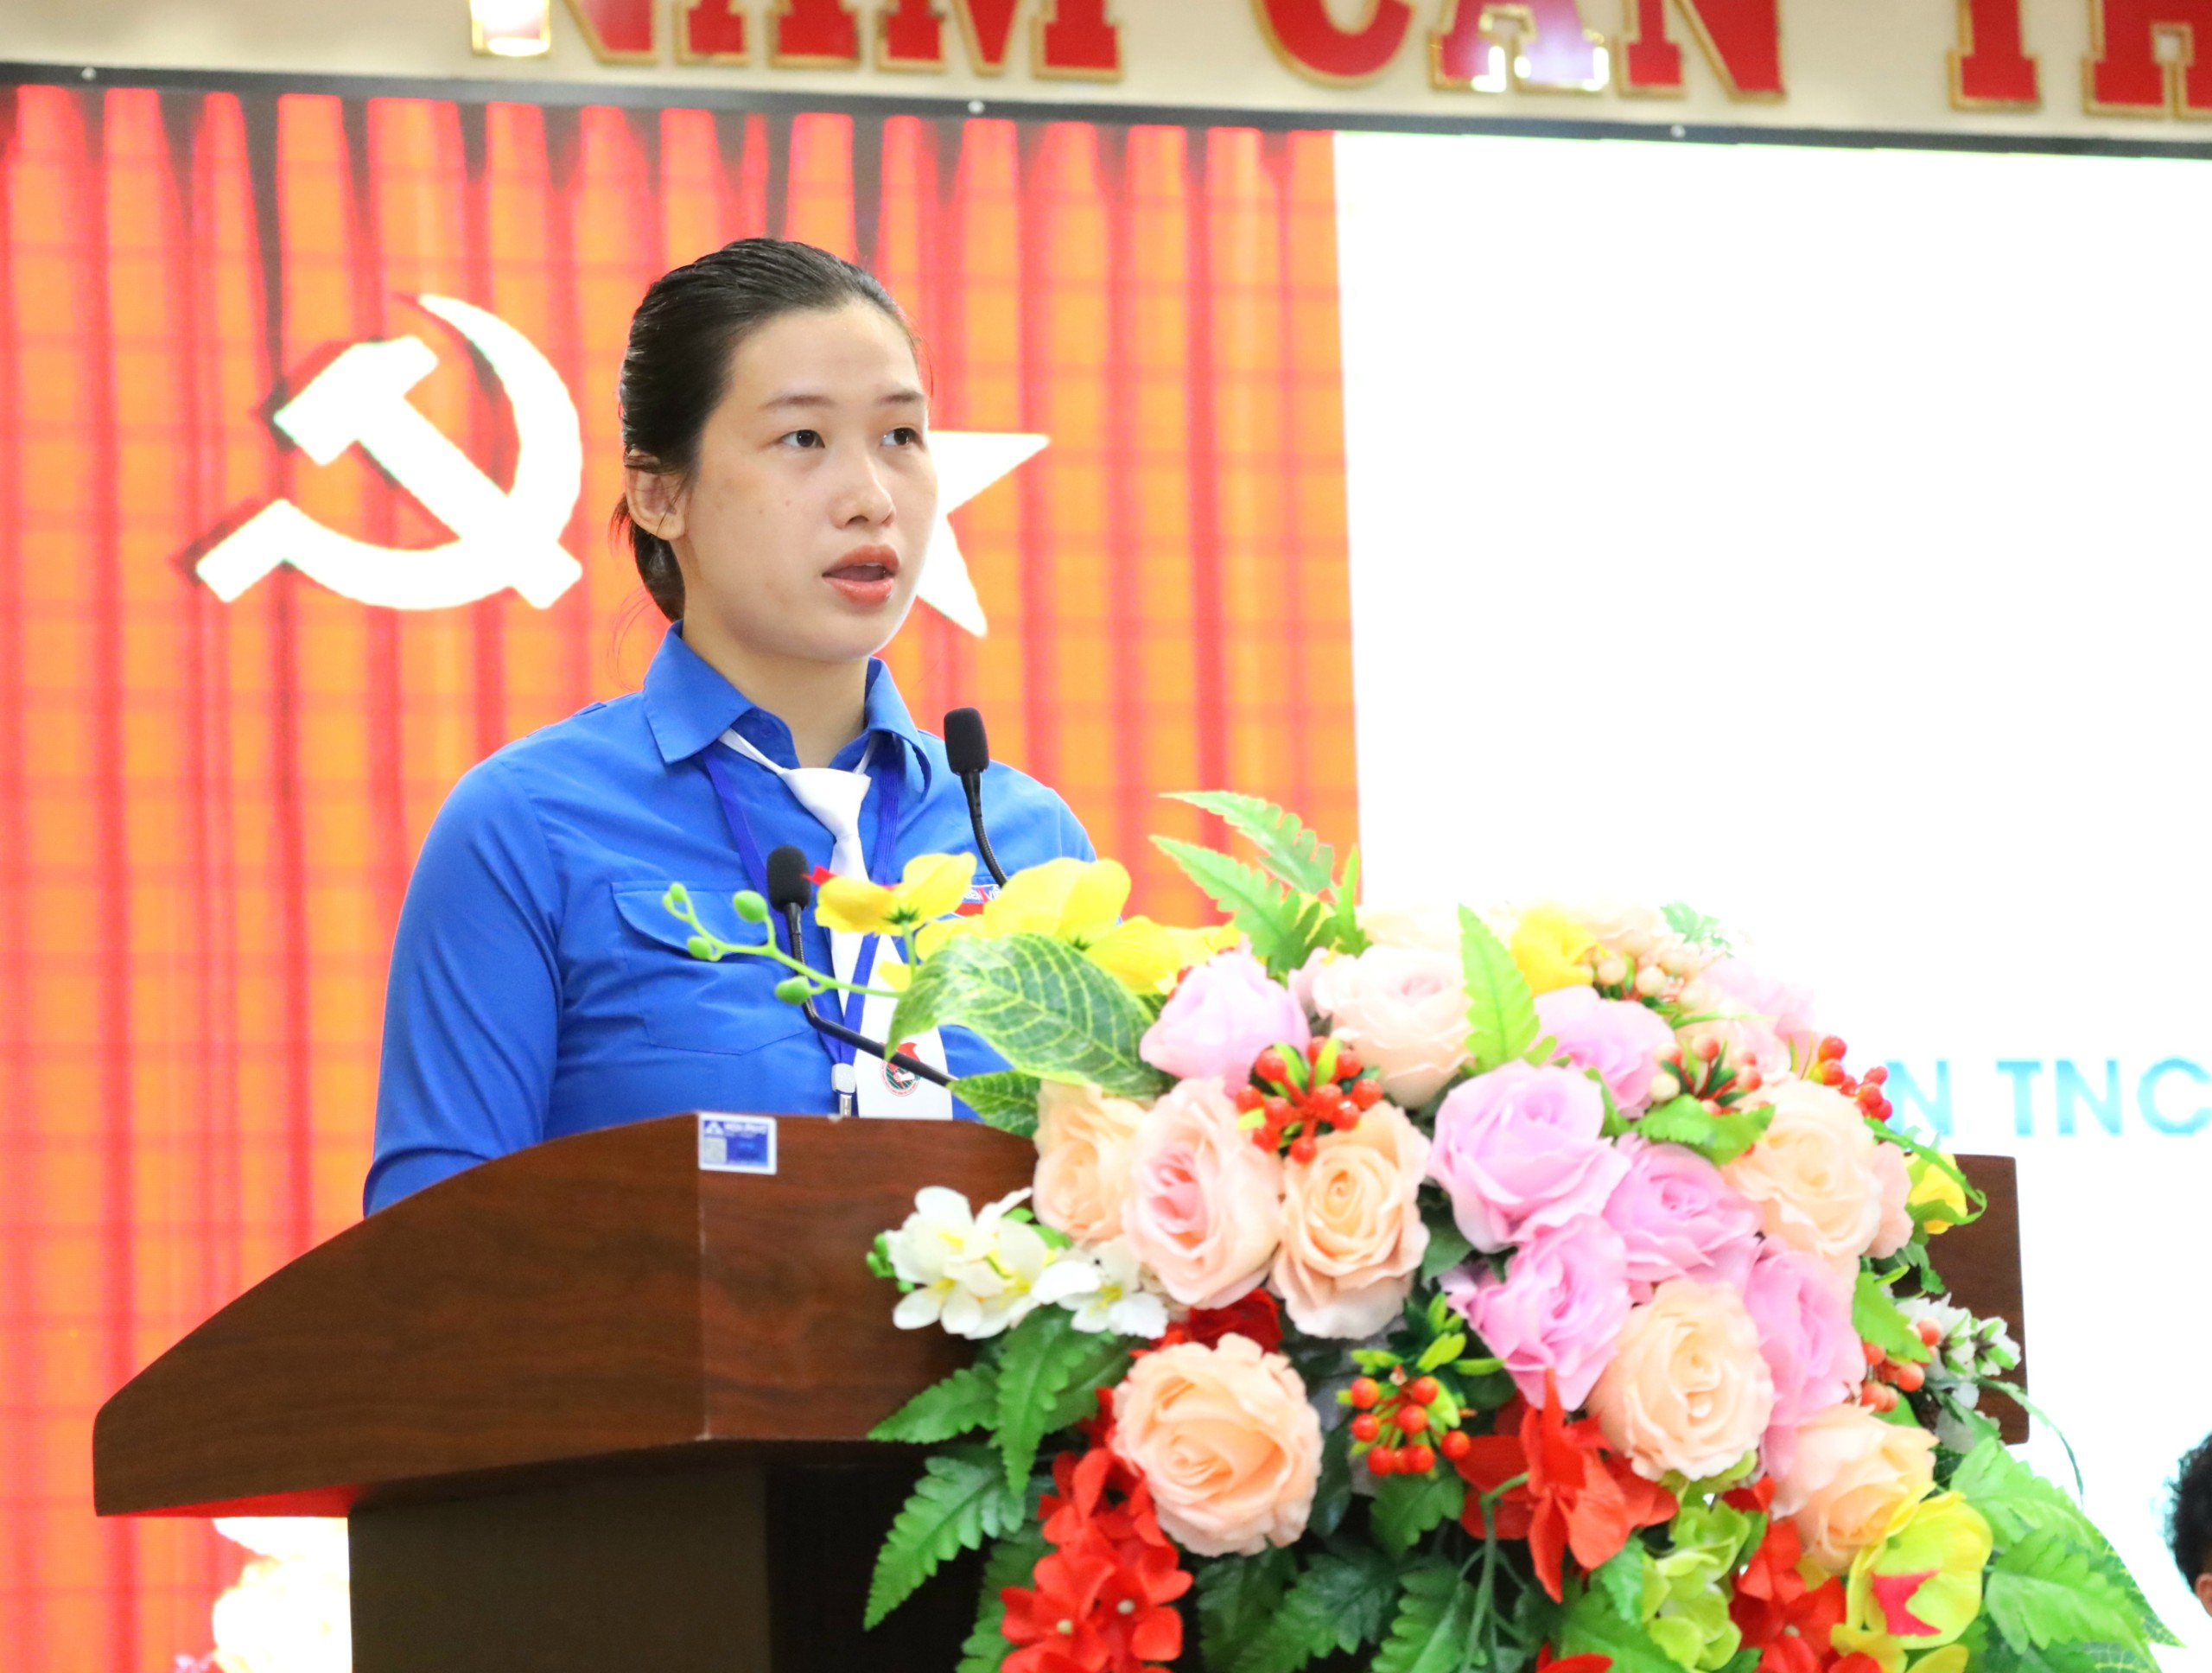 Chị Huỳnh Thanh Kiều - Đại diện Đoàn chủ tịch trình bày tóm tắt dự thảo mục tiêu, phương hướng, nhiệm vụ và giải pháp công tác Đoàn và phong trào thanh niên trường học nhiệm kỳ 2022 - 2024.